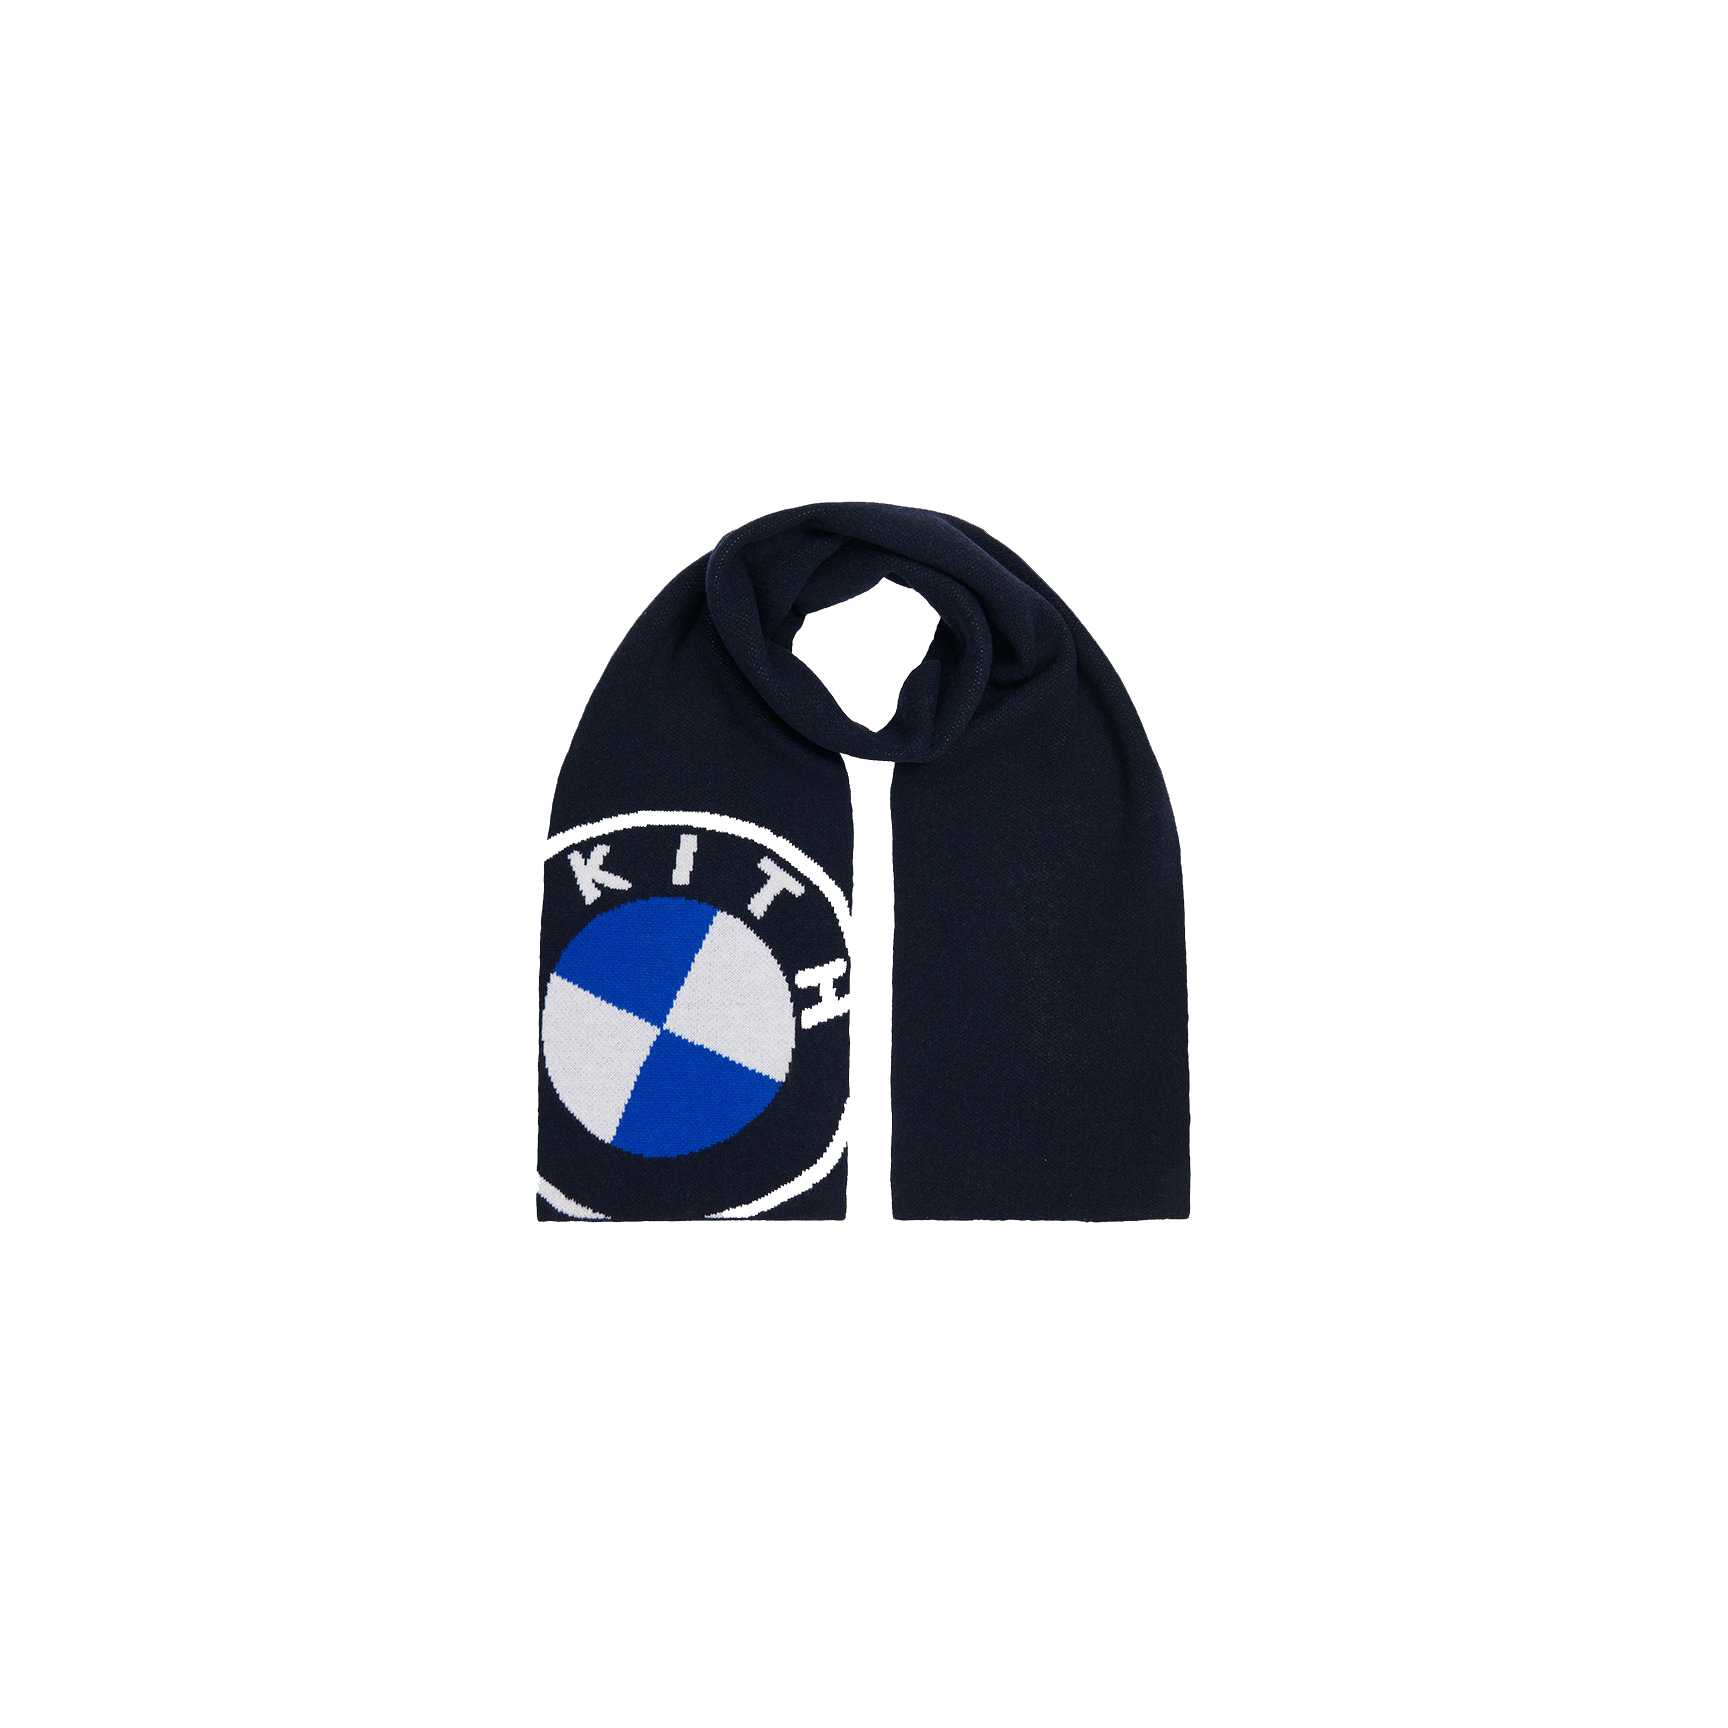 Kith x BMW Roundel Knit Scarf Black - FW20